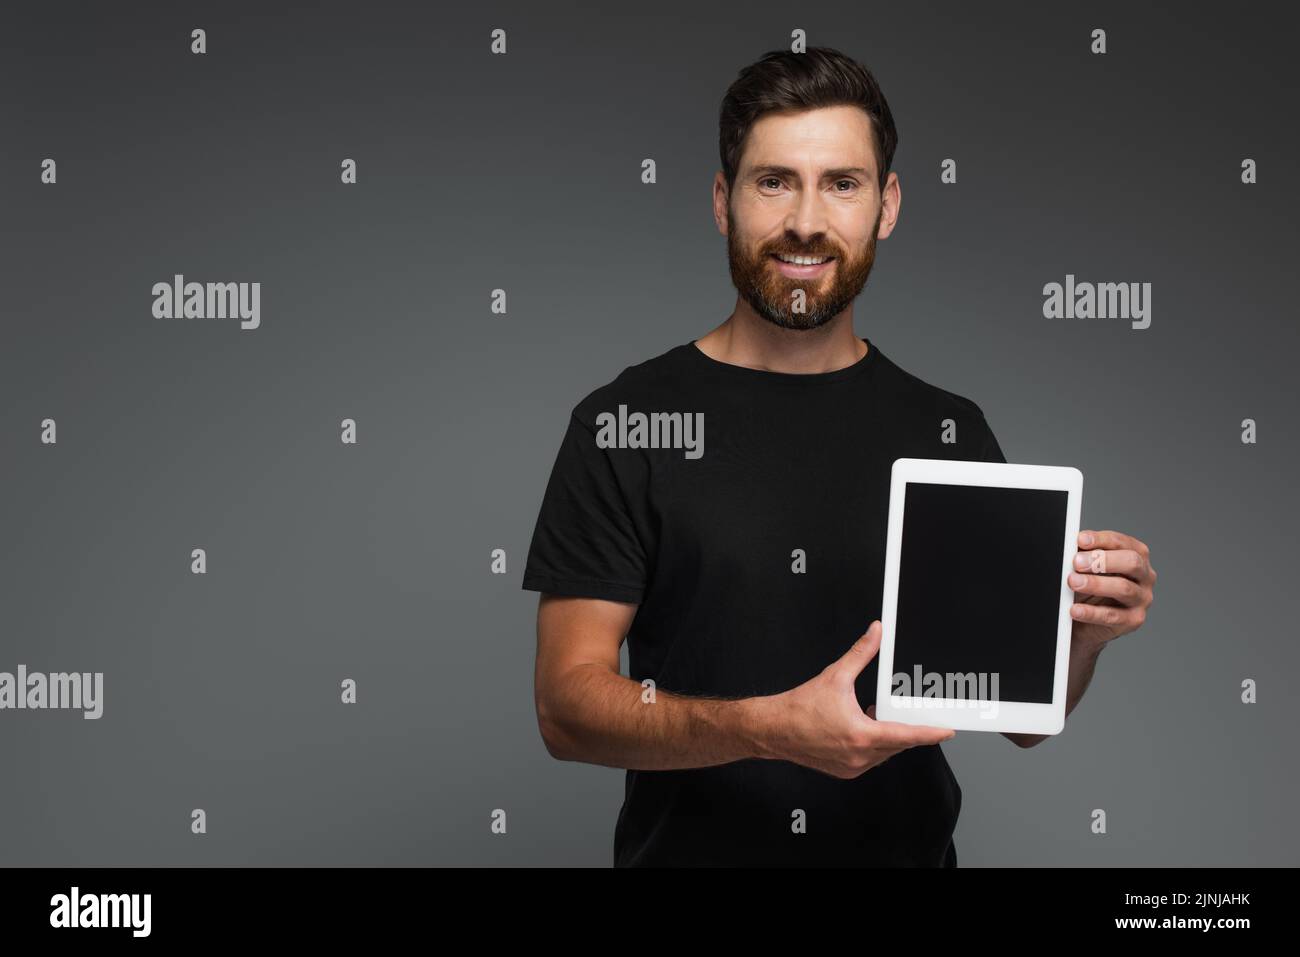 feliz hombre barbudo en negro camiseta sosteniendo tableta digital con pantalla en blanco aislado en gris, imagen de stock Foto de stock